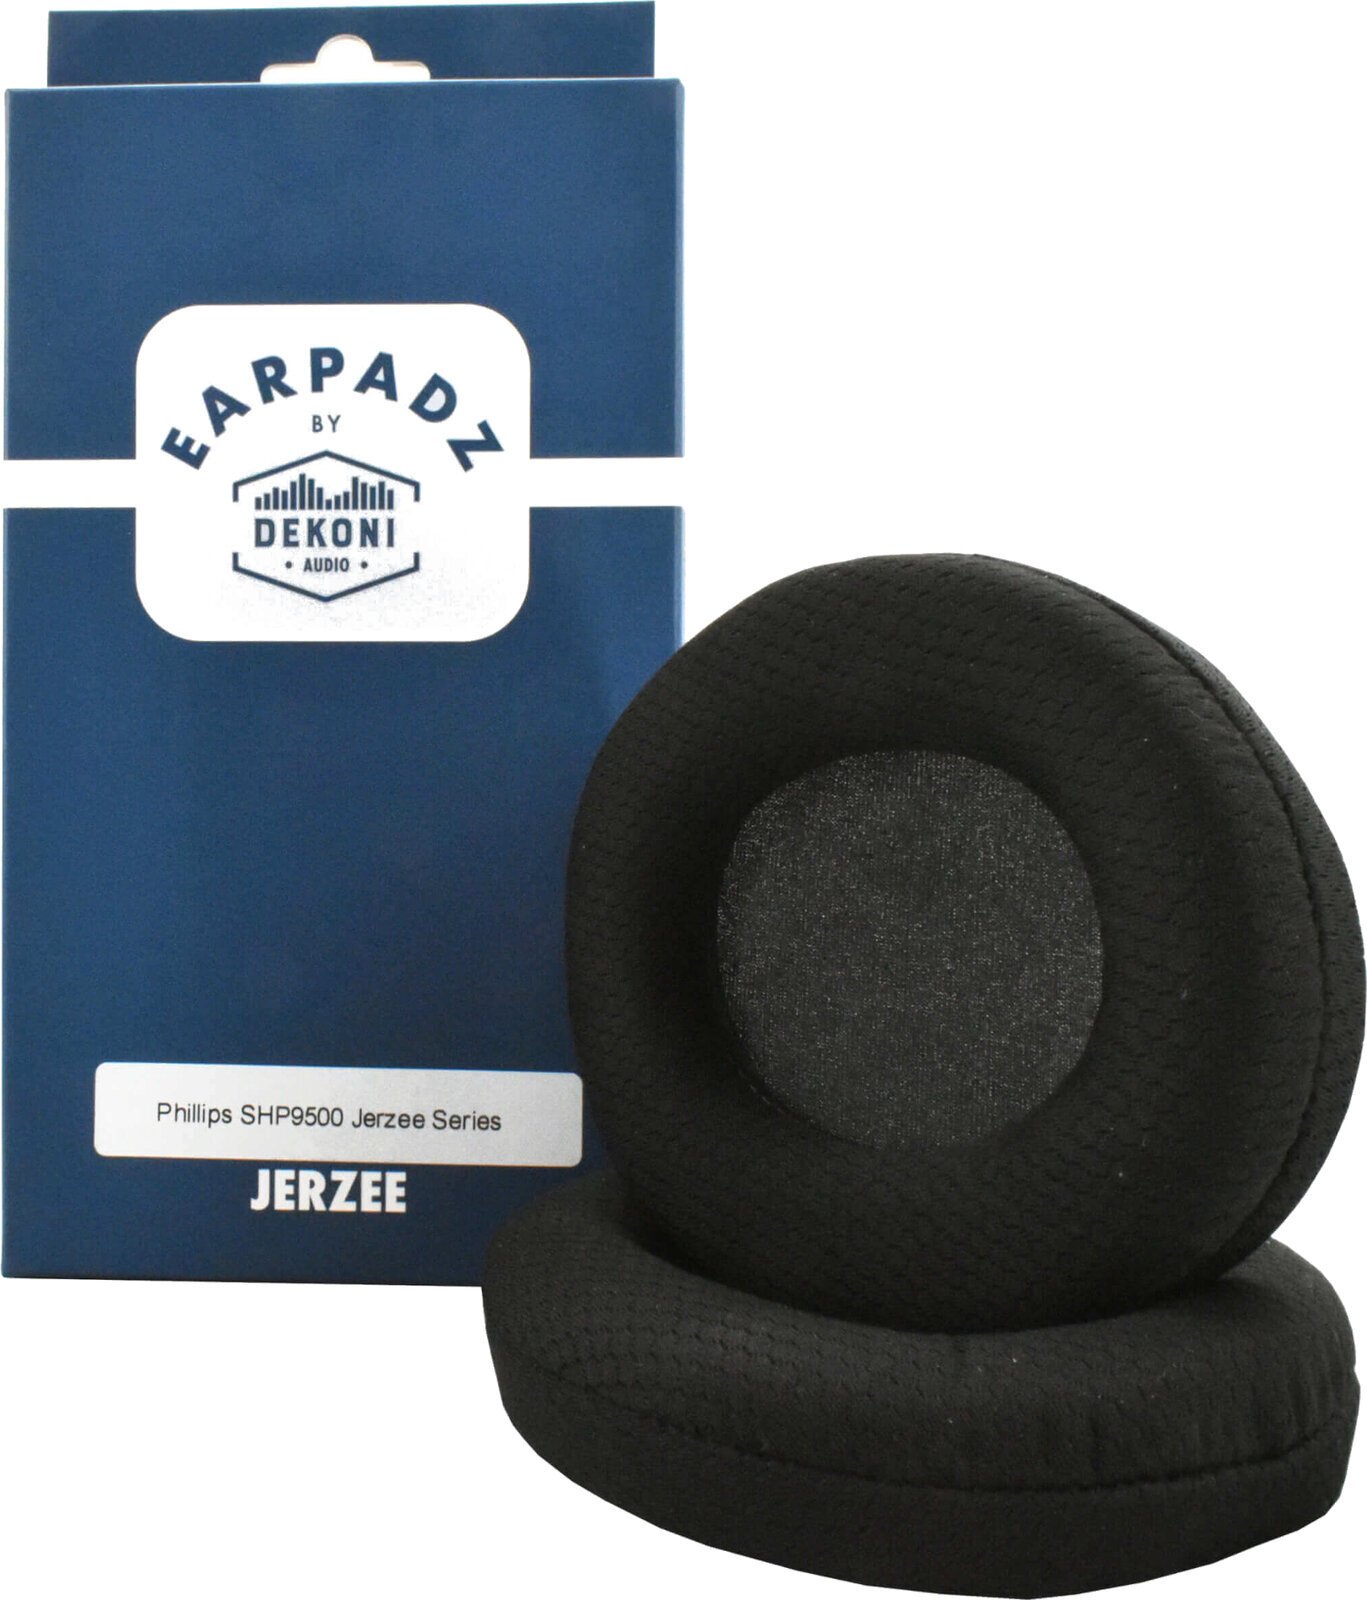 Ear Pads for headphones Earpadz by Dekoni Audio JRZ-SHP9500 Ear Pads for headphones Black